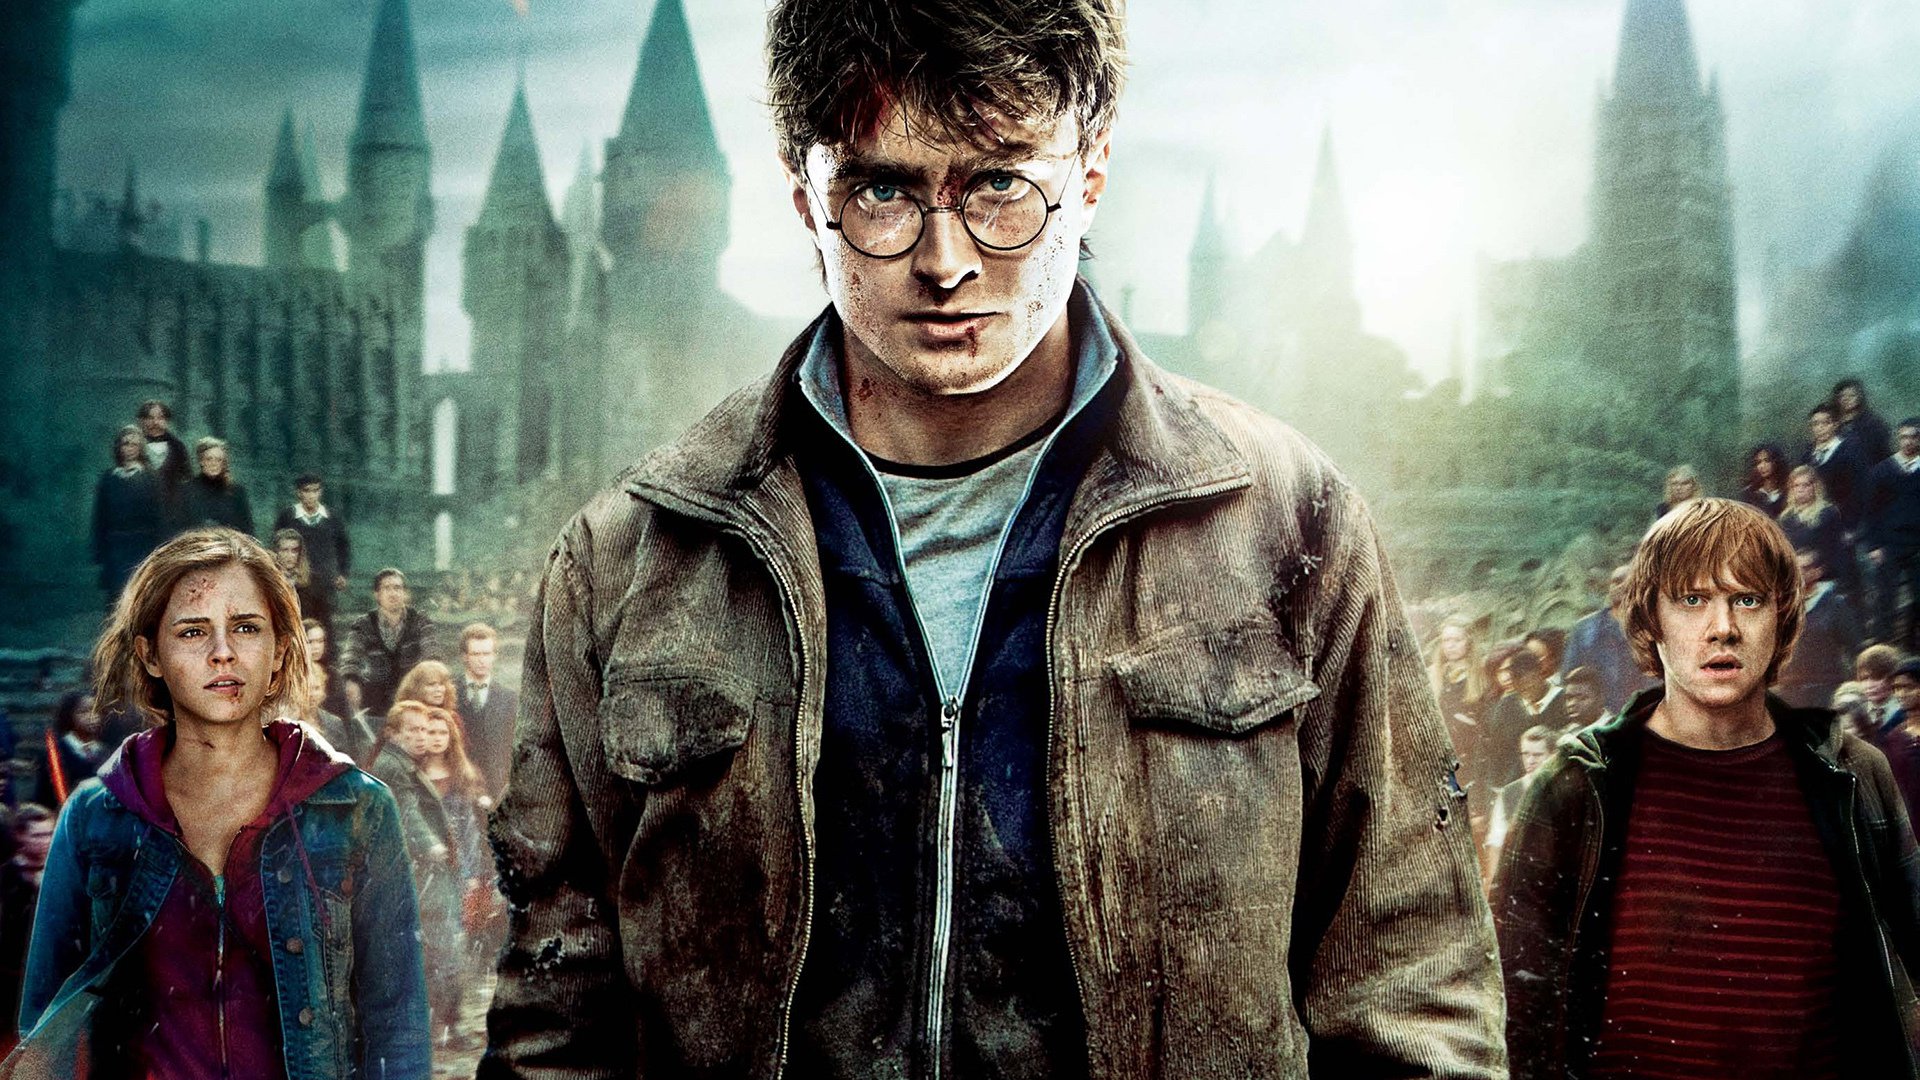 Harry Potter och dödsrelikerna: del 2